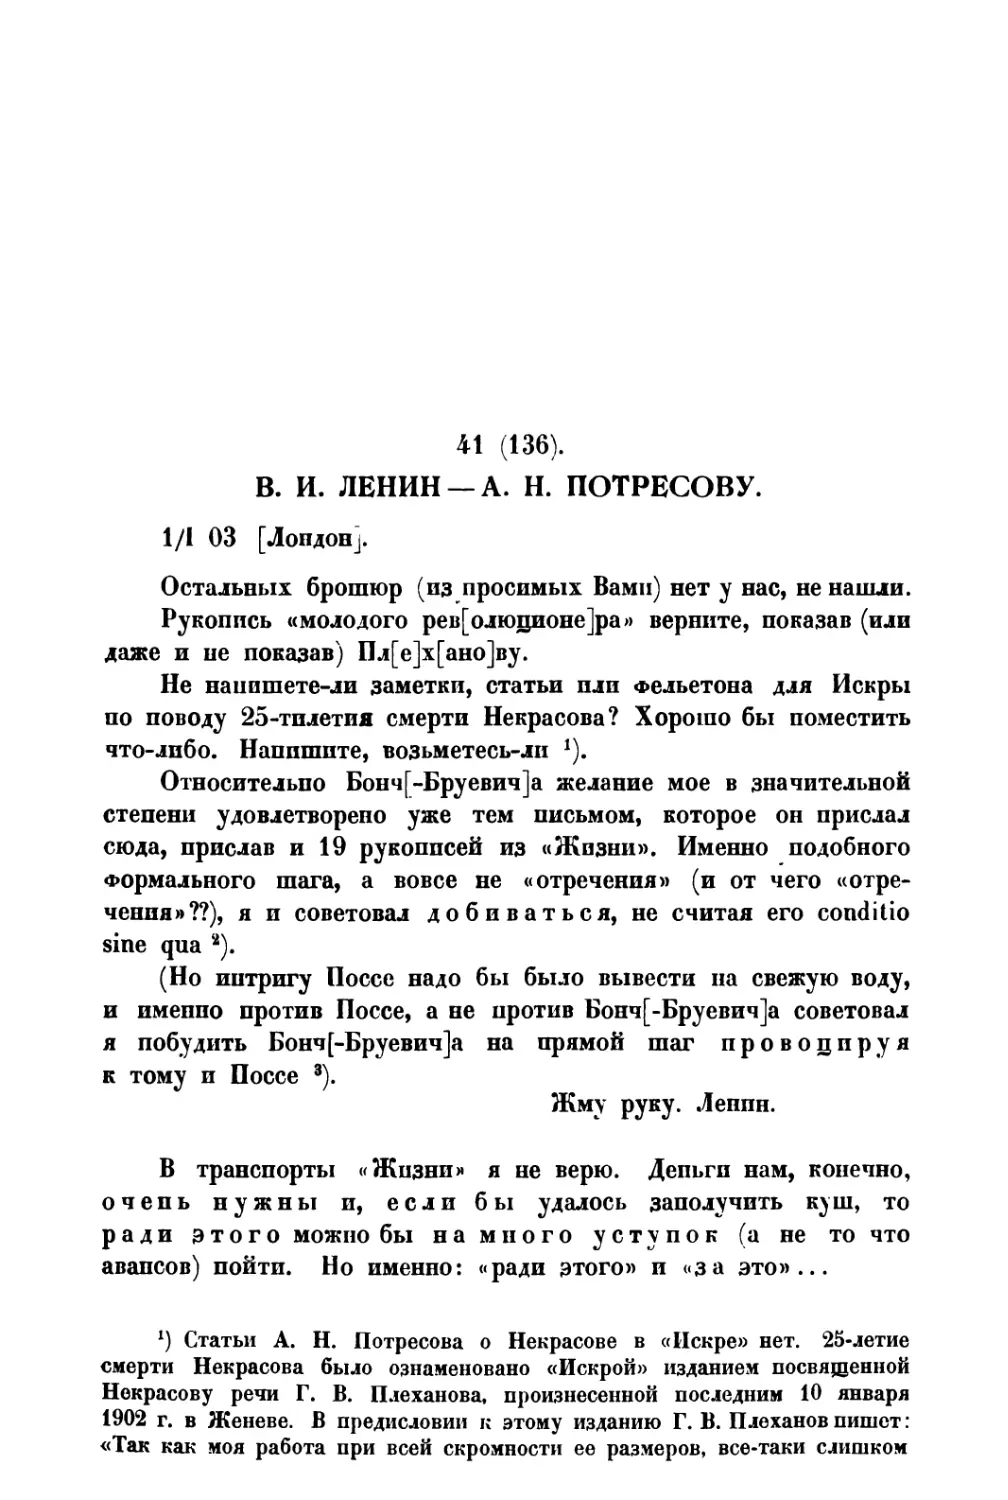 41. В. И. Ленин — А. Н. Потресову от 1 I 1903 г